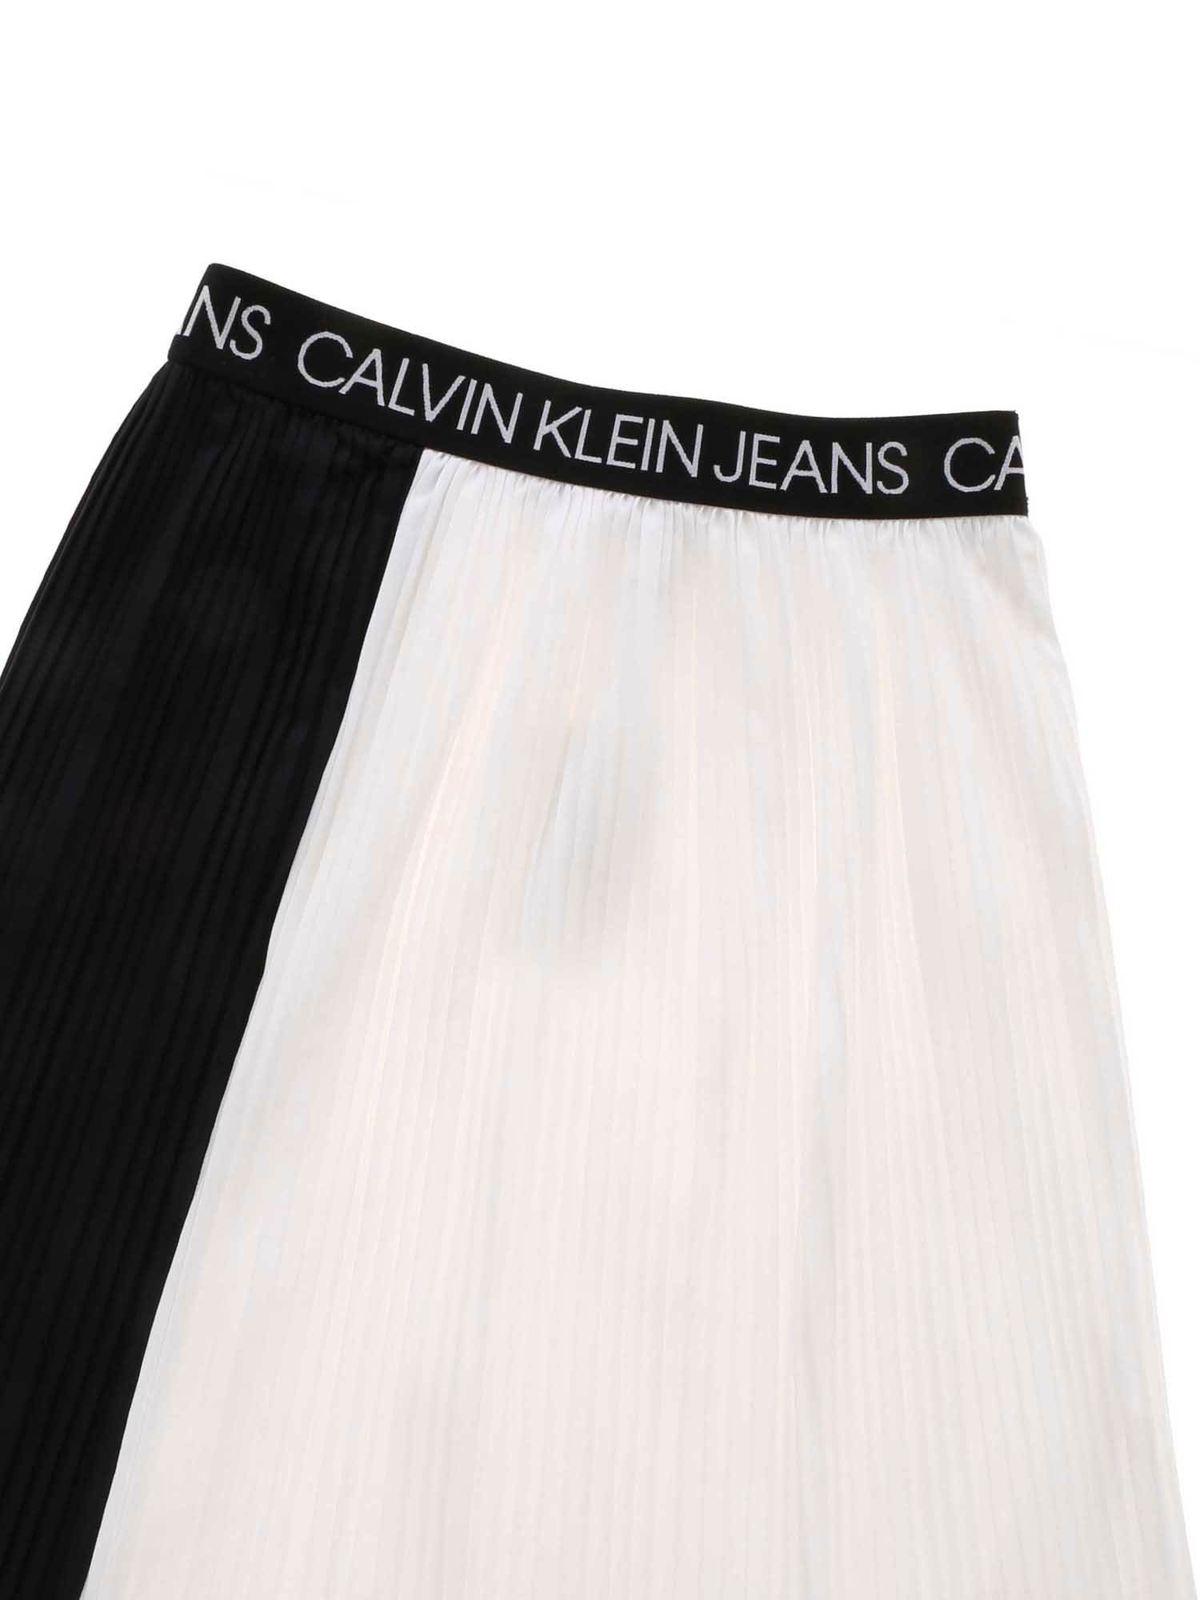 Faldas Calvin Klein - Falda - Blanco - IG0IG00462BAE | iKRIX tienda online